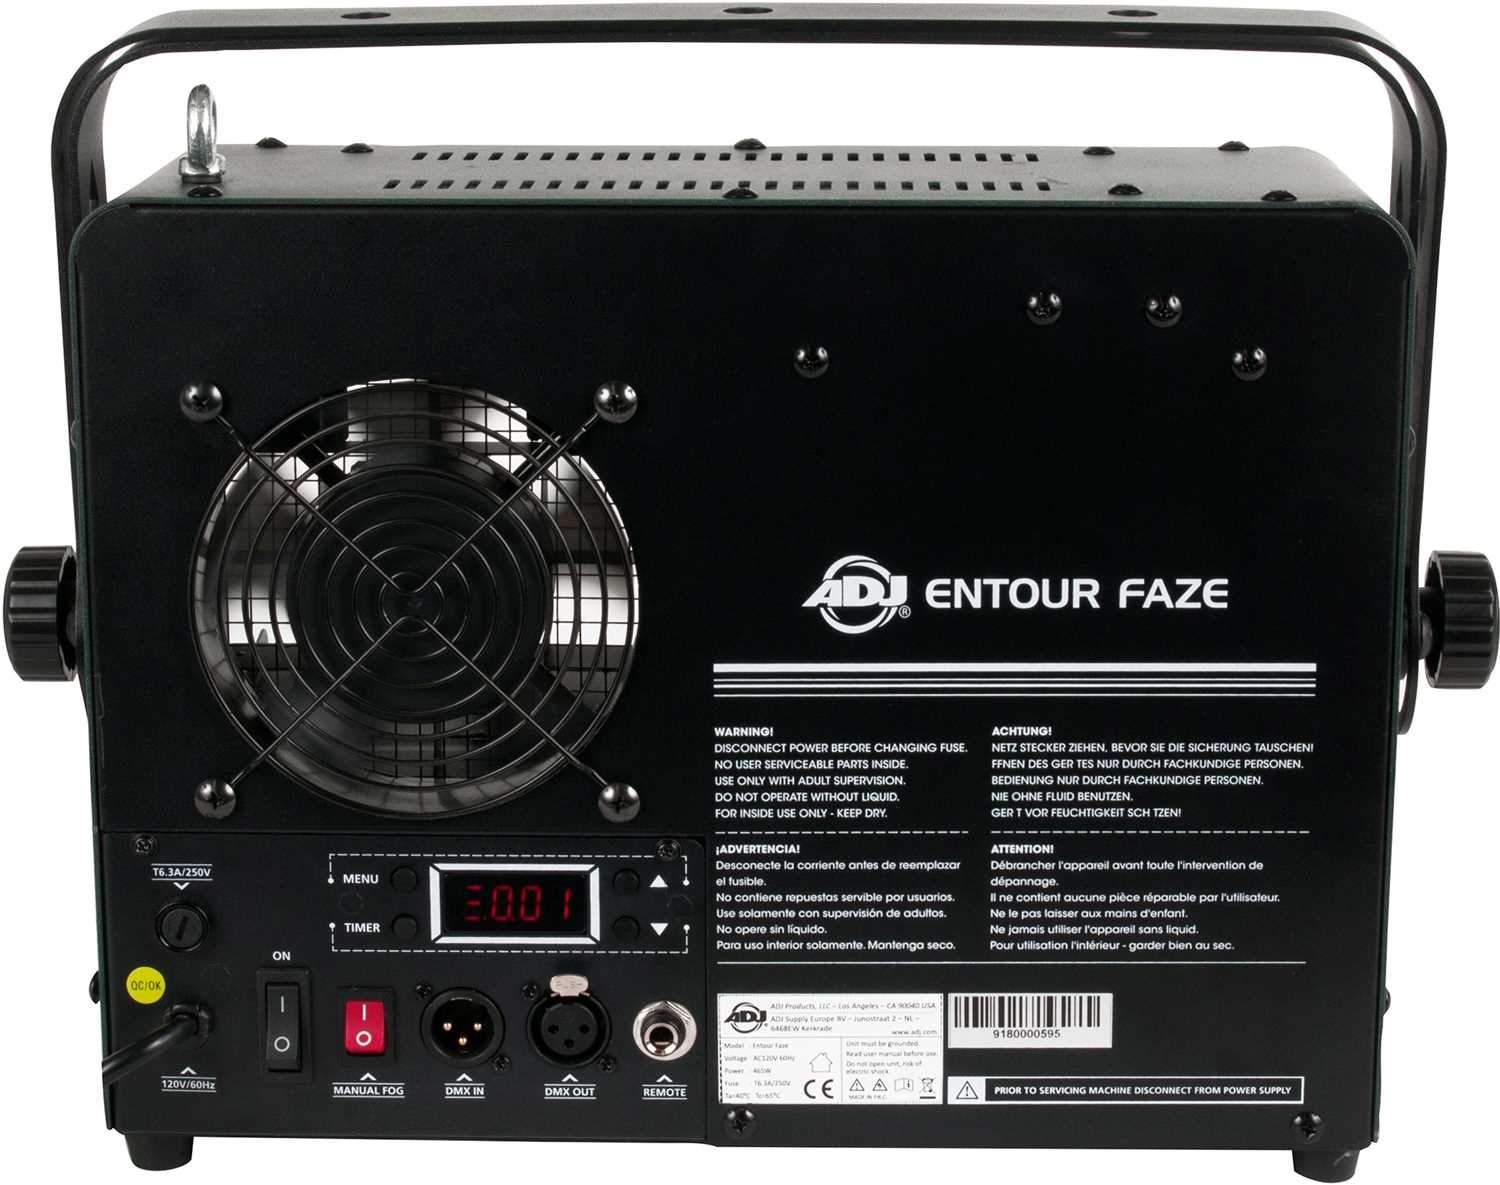 ADJ American DJ Entour Faze 450W Faze Machine with DMX - ProSound and Stage Lighting